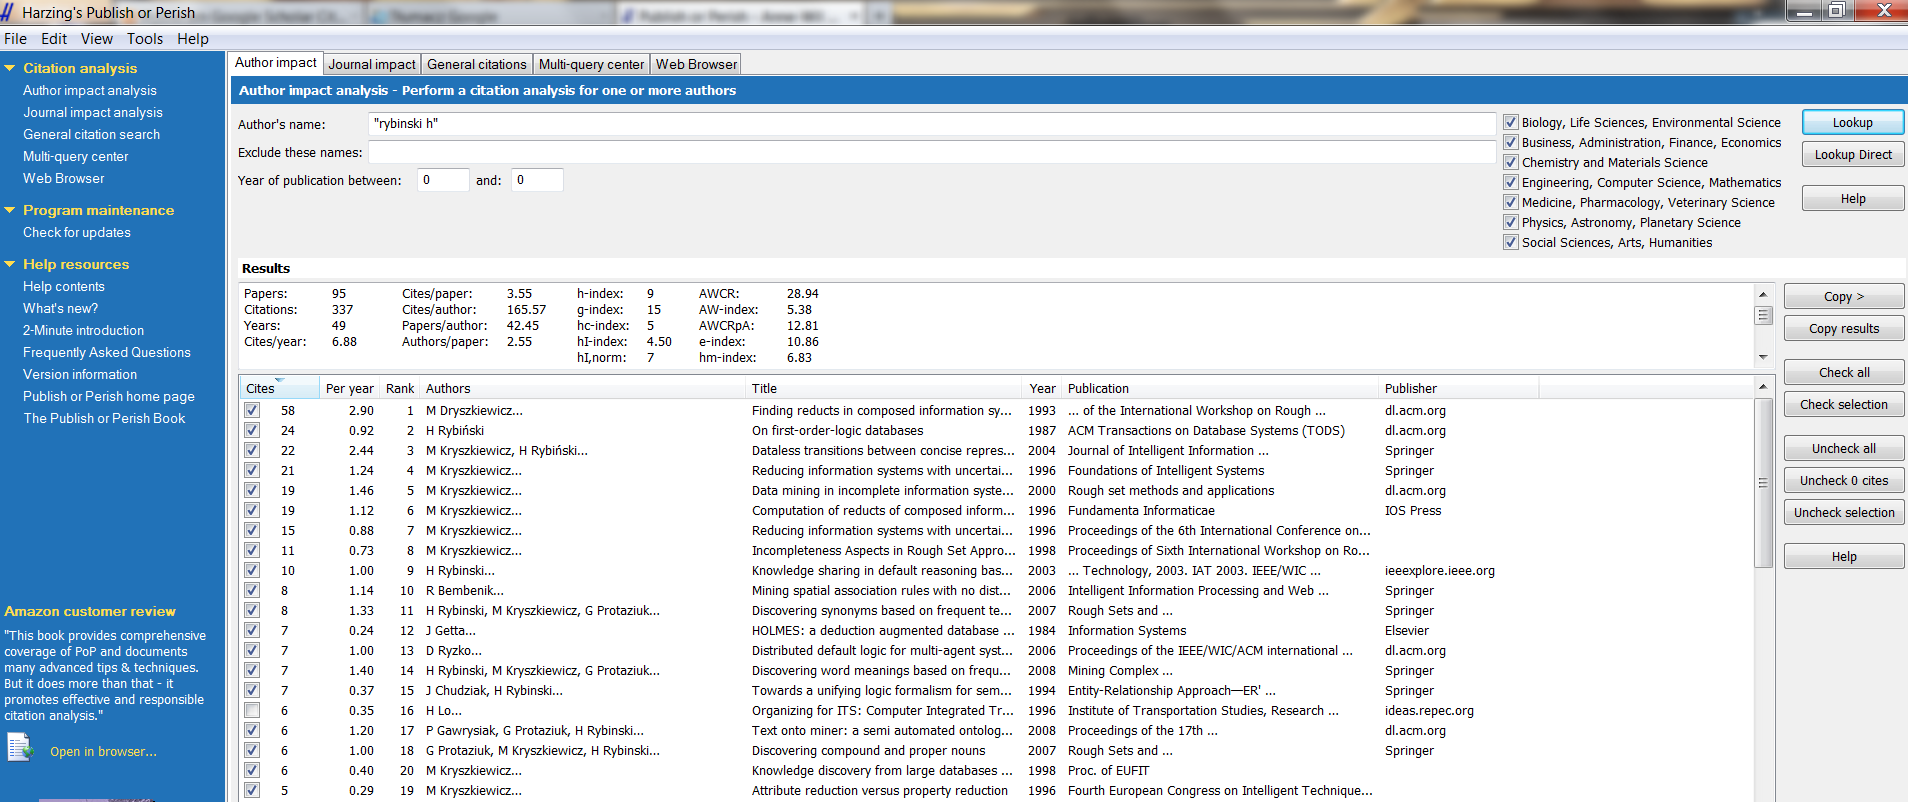 Publish or Perish (PoP) narzędzie Oprogramowanie korzystające z danych w Google Scholar.